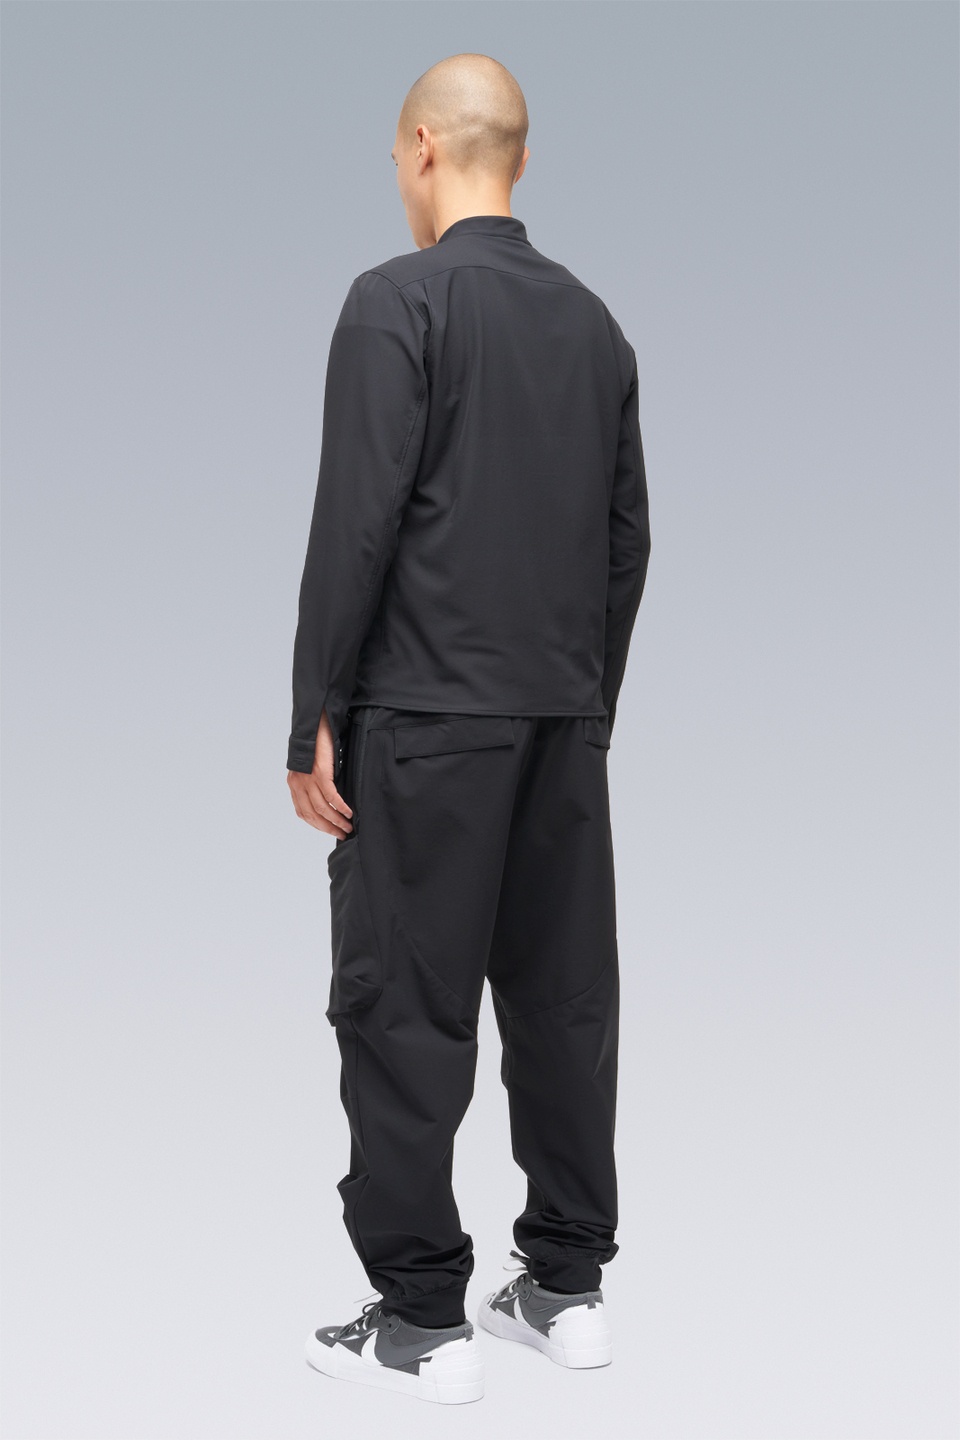 LA6B-DS schoeller® Dryskin™ Long Sleeve Shirt Schwarzrot - 20